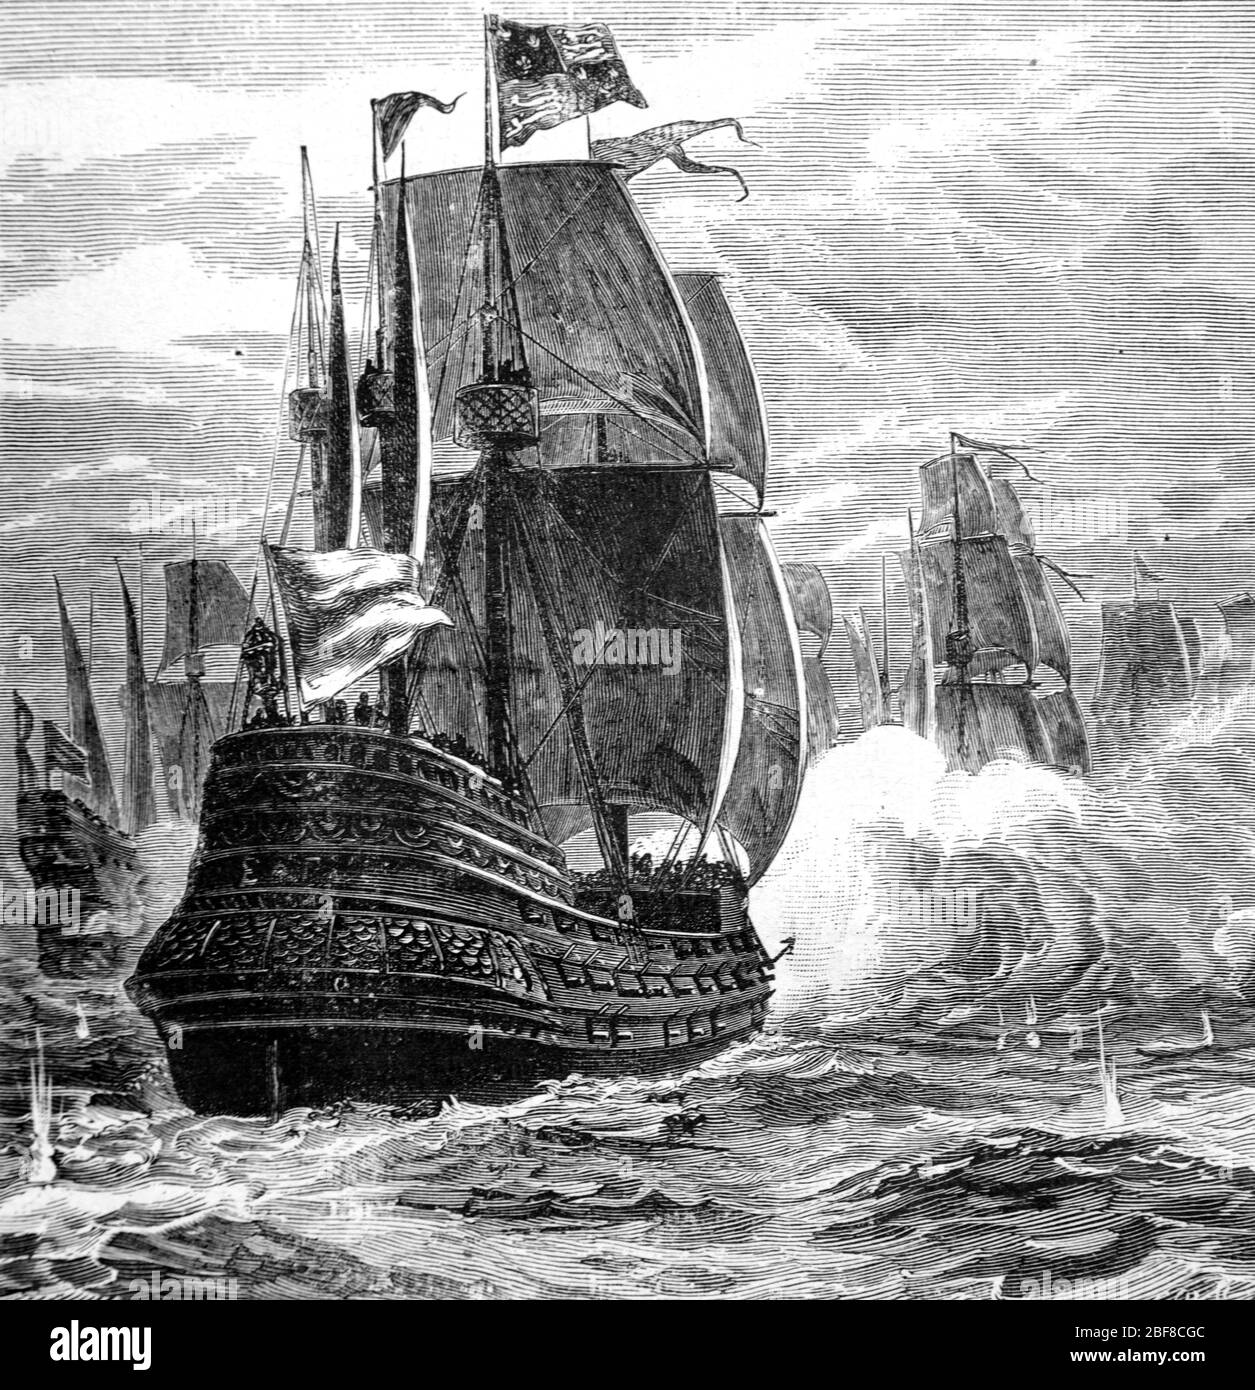 L'Armada espagnole bataille navale contre la Marine royale britannique ou la flotte anglaise dans la Manche. L'Armada comprend 130 navires espagnols, faisant partie de la guerre anglo-espagnole (1585-1604) et de la guerre d'Eighty Years. Vintage ou ancienne illustration ou gravure 1888 Banque D'Images